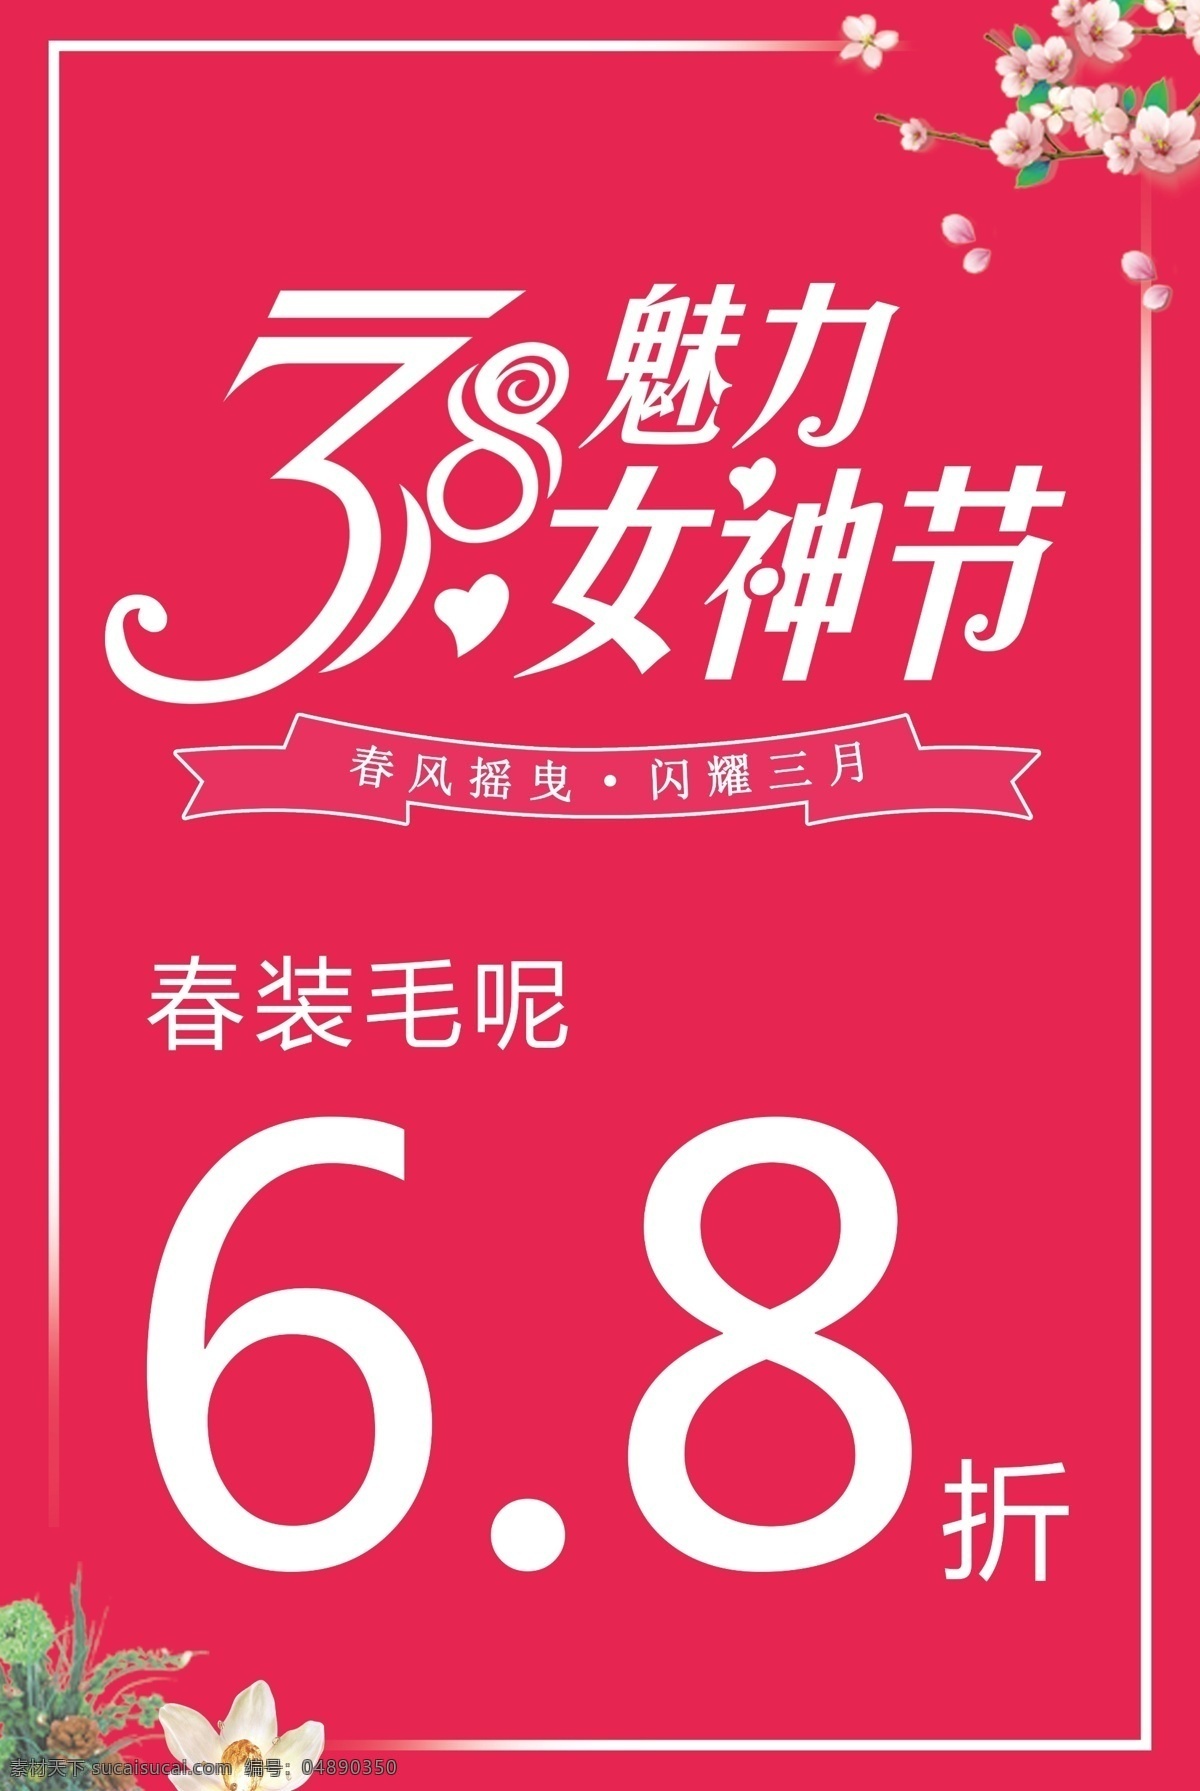 妇女节 宣传海报 女神节 38 促销 女王节 女王节促销